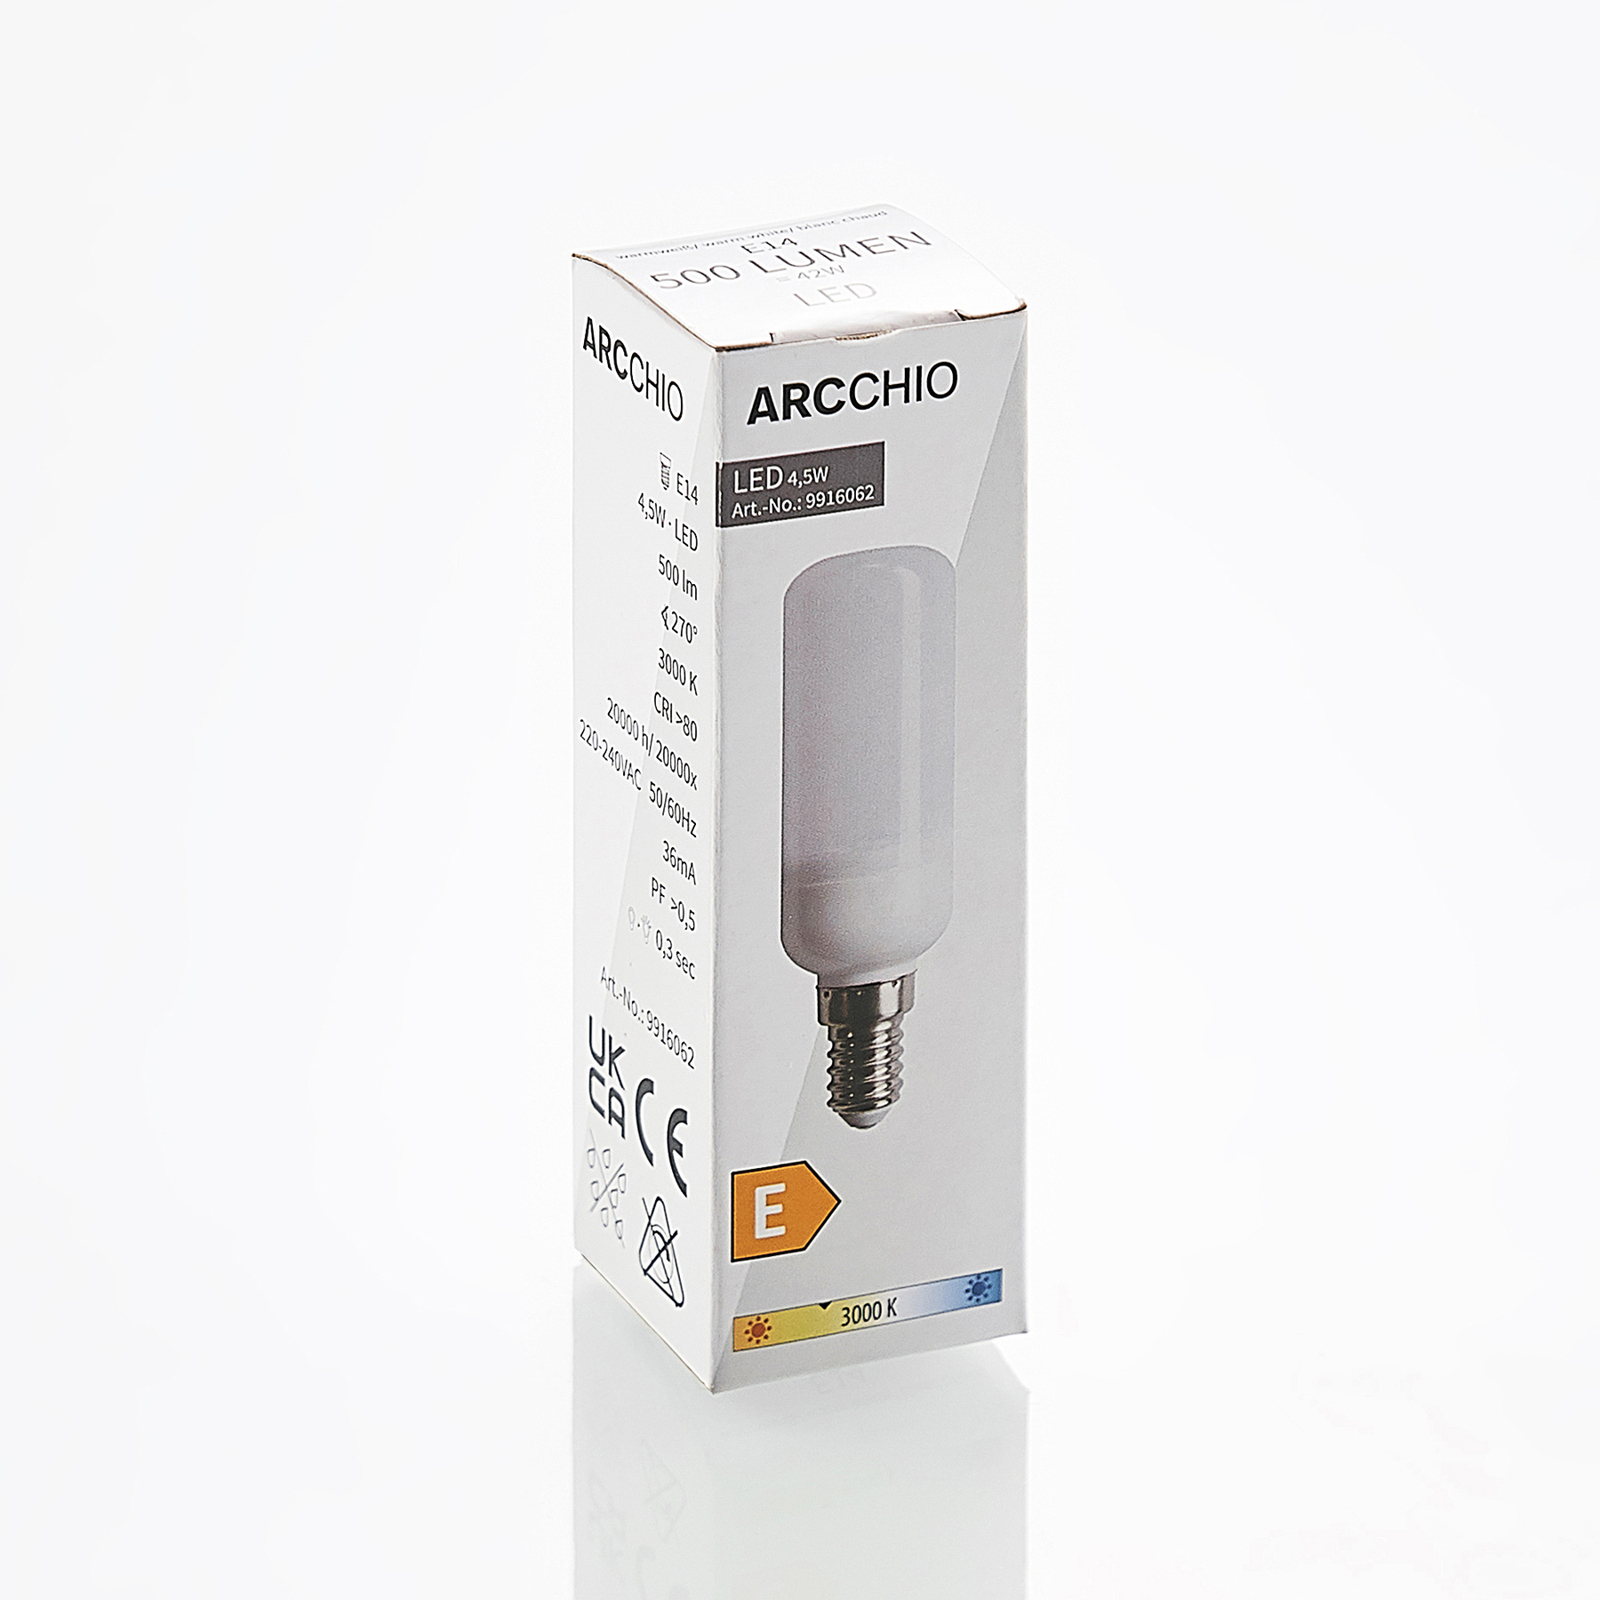 Φωτιστικό σωλήνα LED Arcchio E14 4.5W 3,000K σετ 4 τεμαχίων